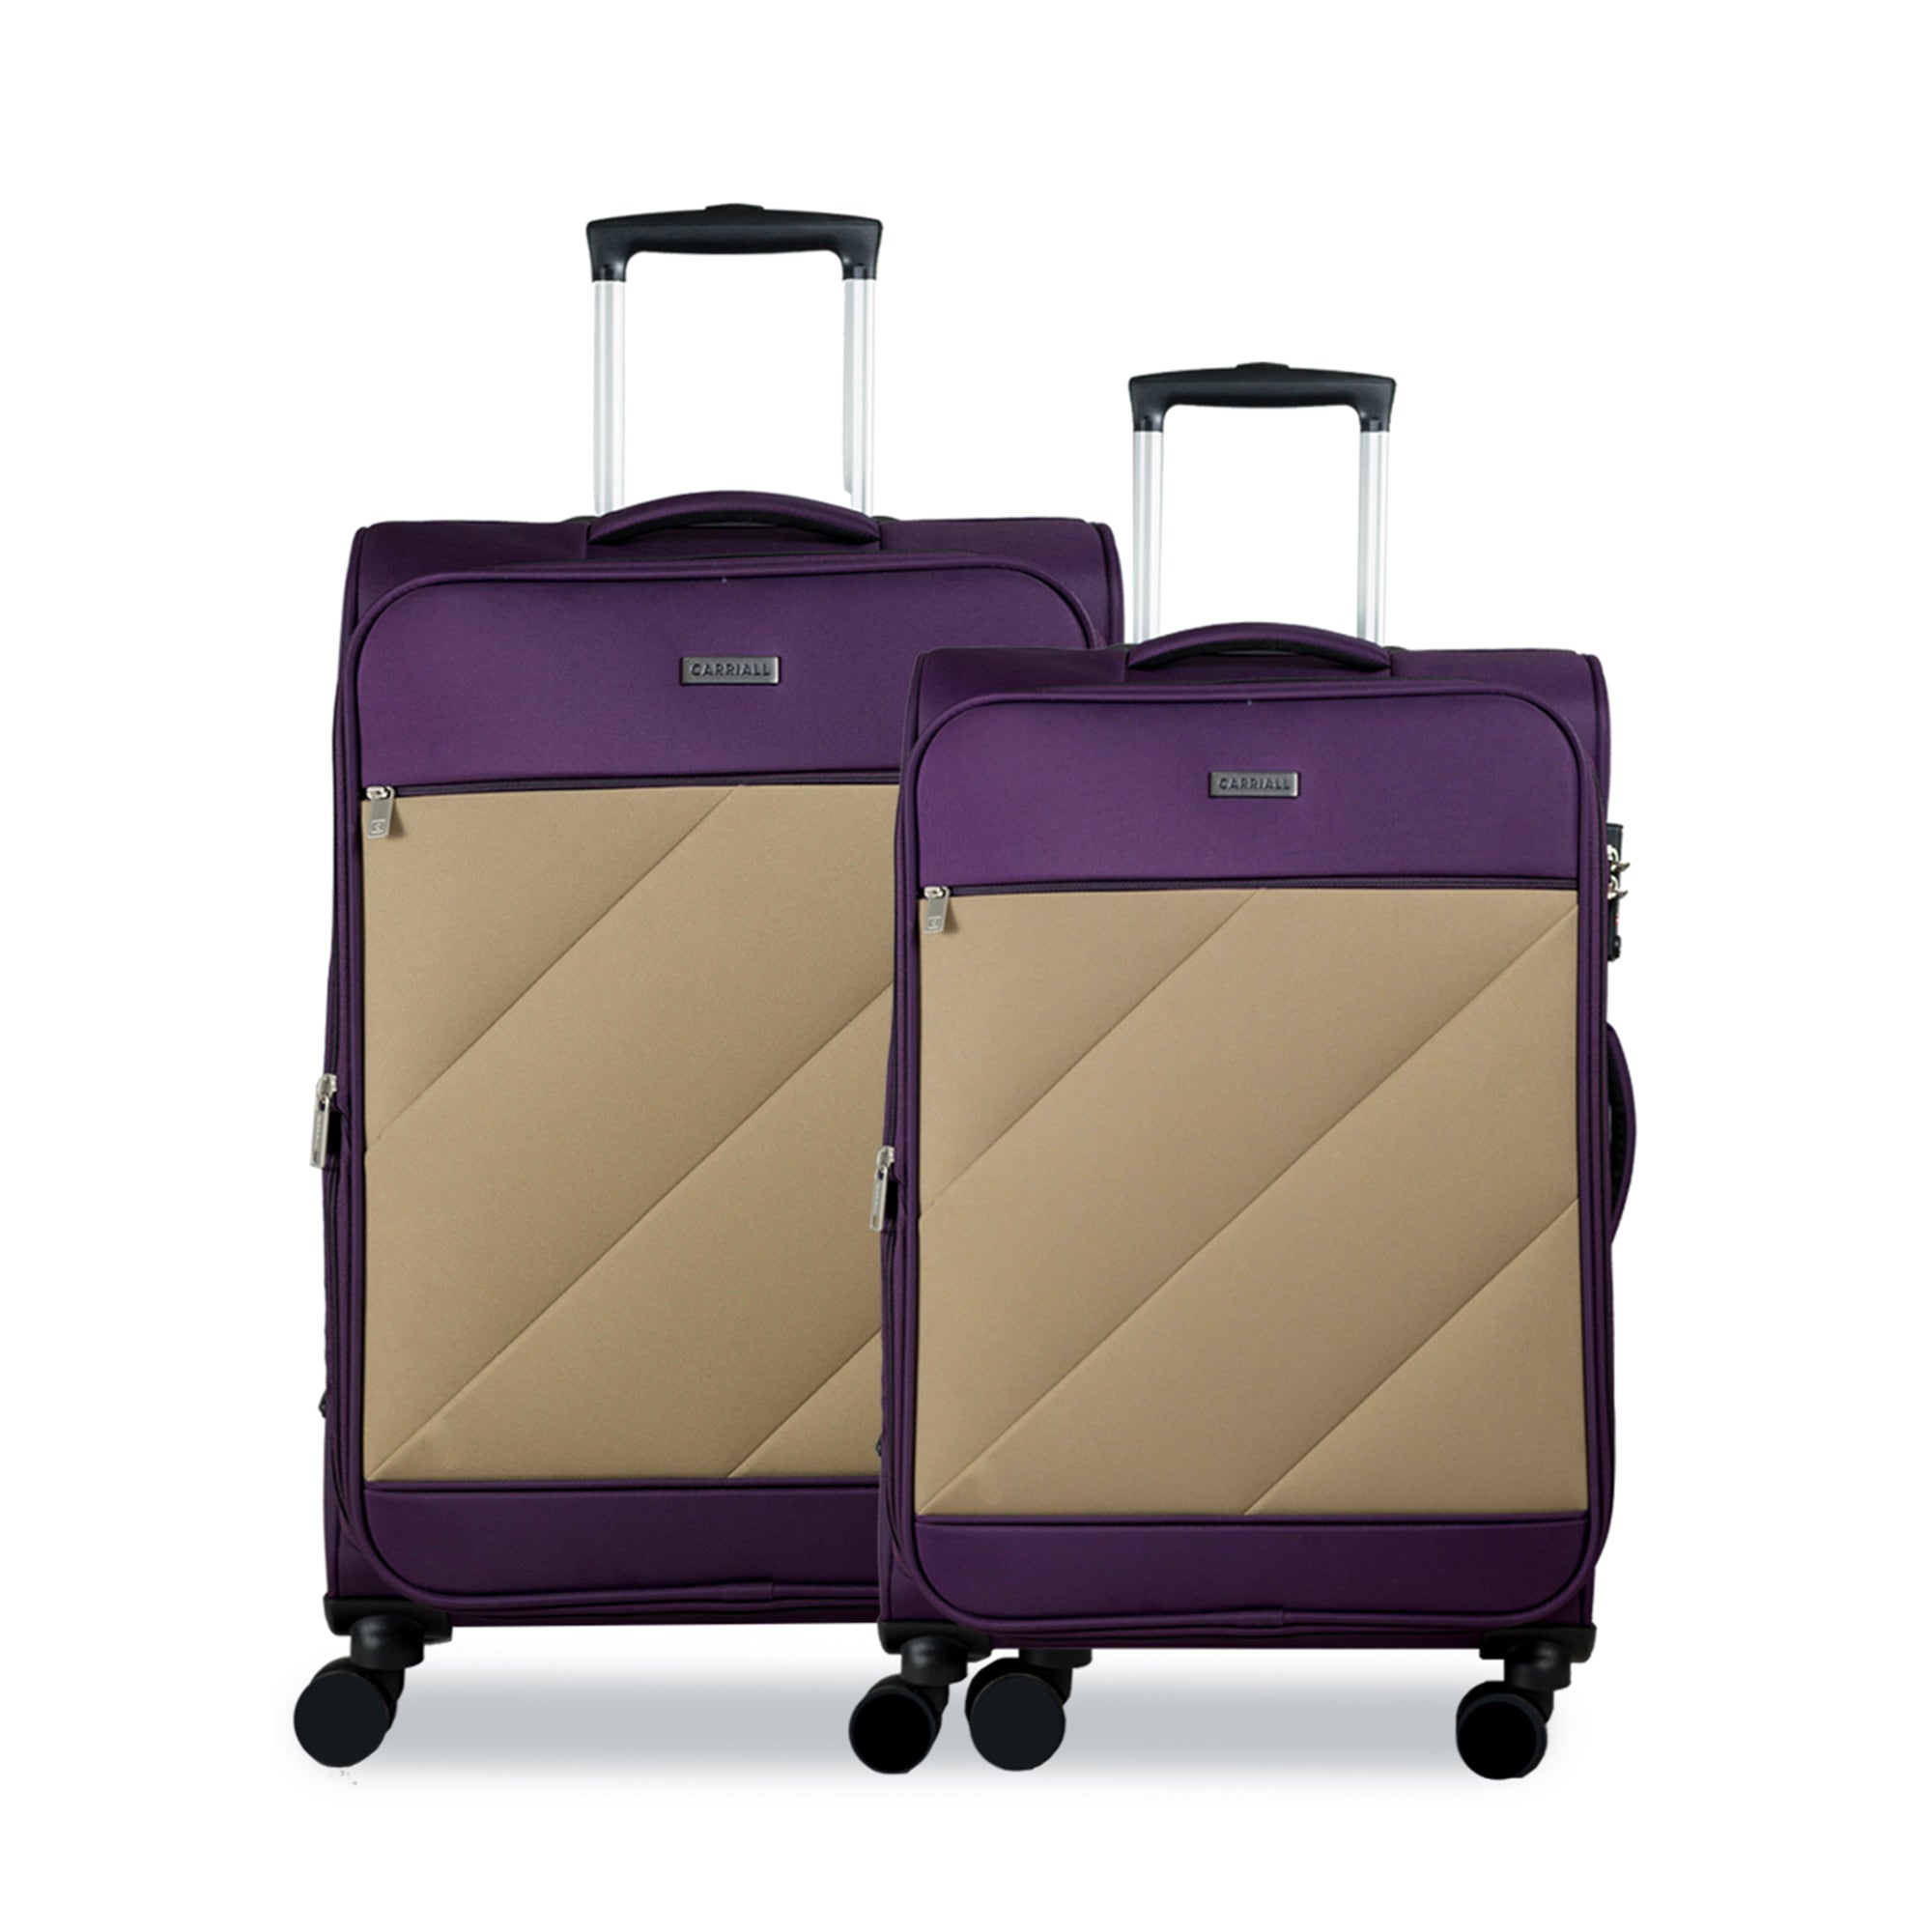 Slash Luggage Set of 2